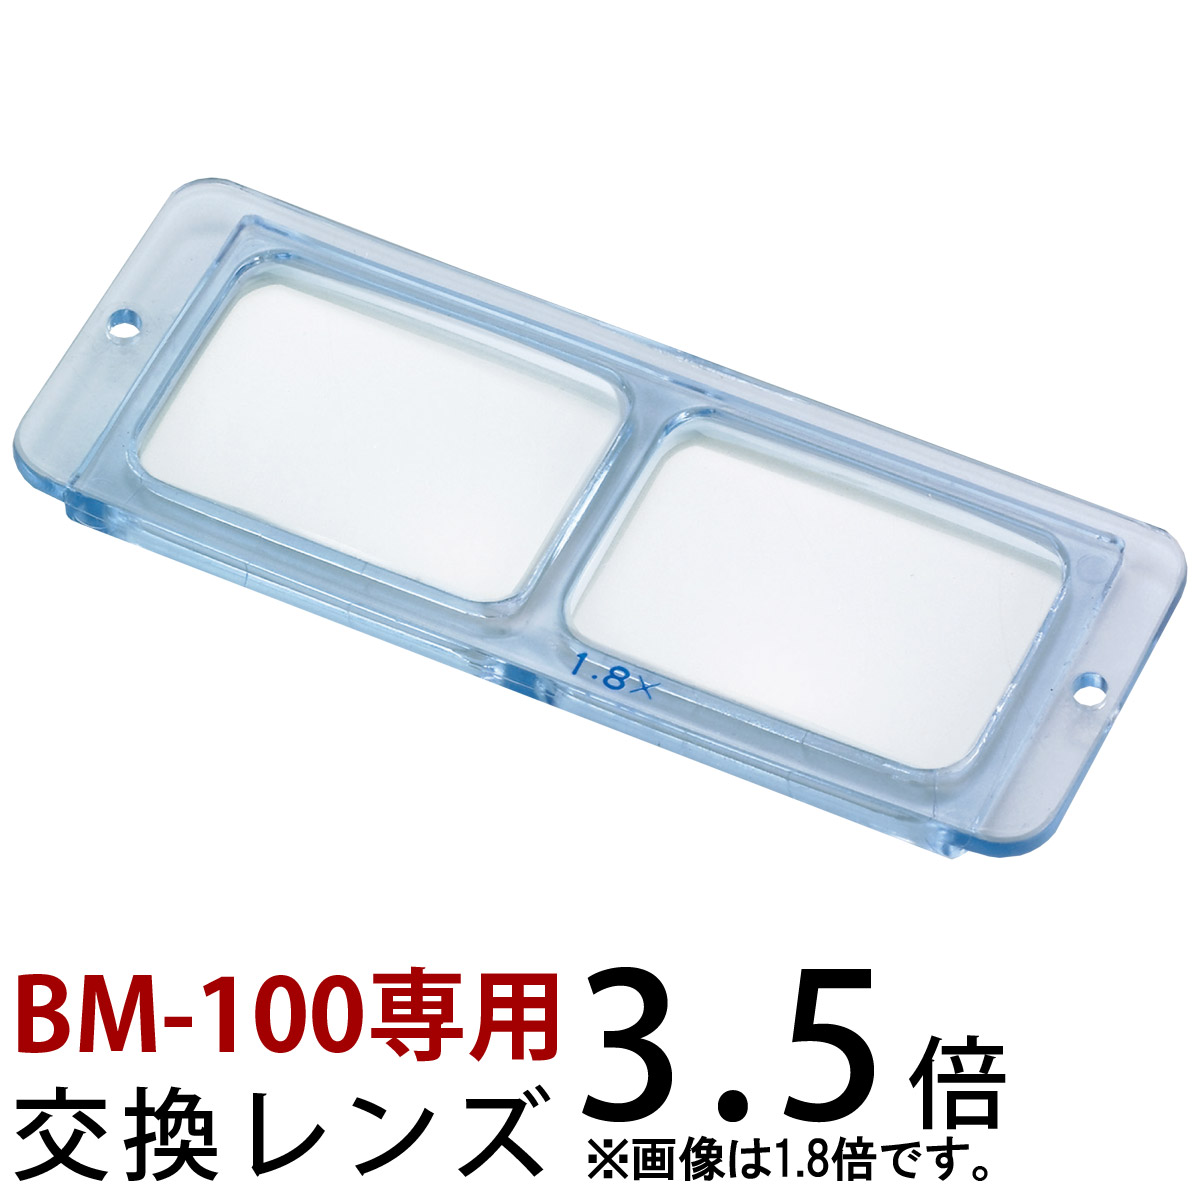 ヘッドルーペ 双眼 交換レンズ BM-100D1 3.5倍 BM-100専用 池田レンズ